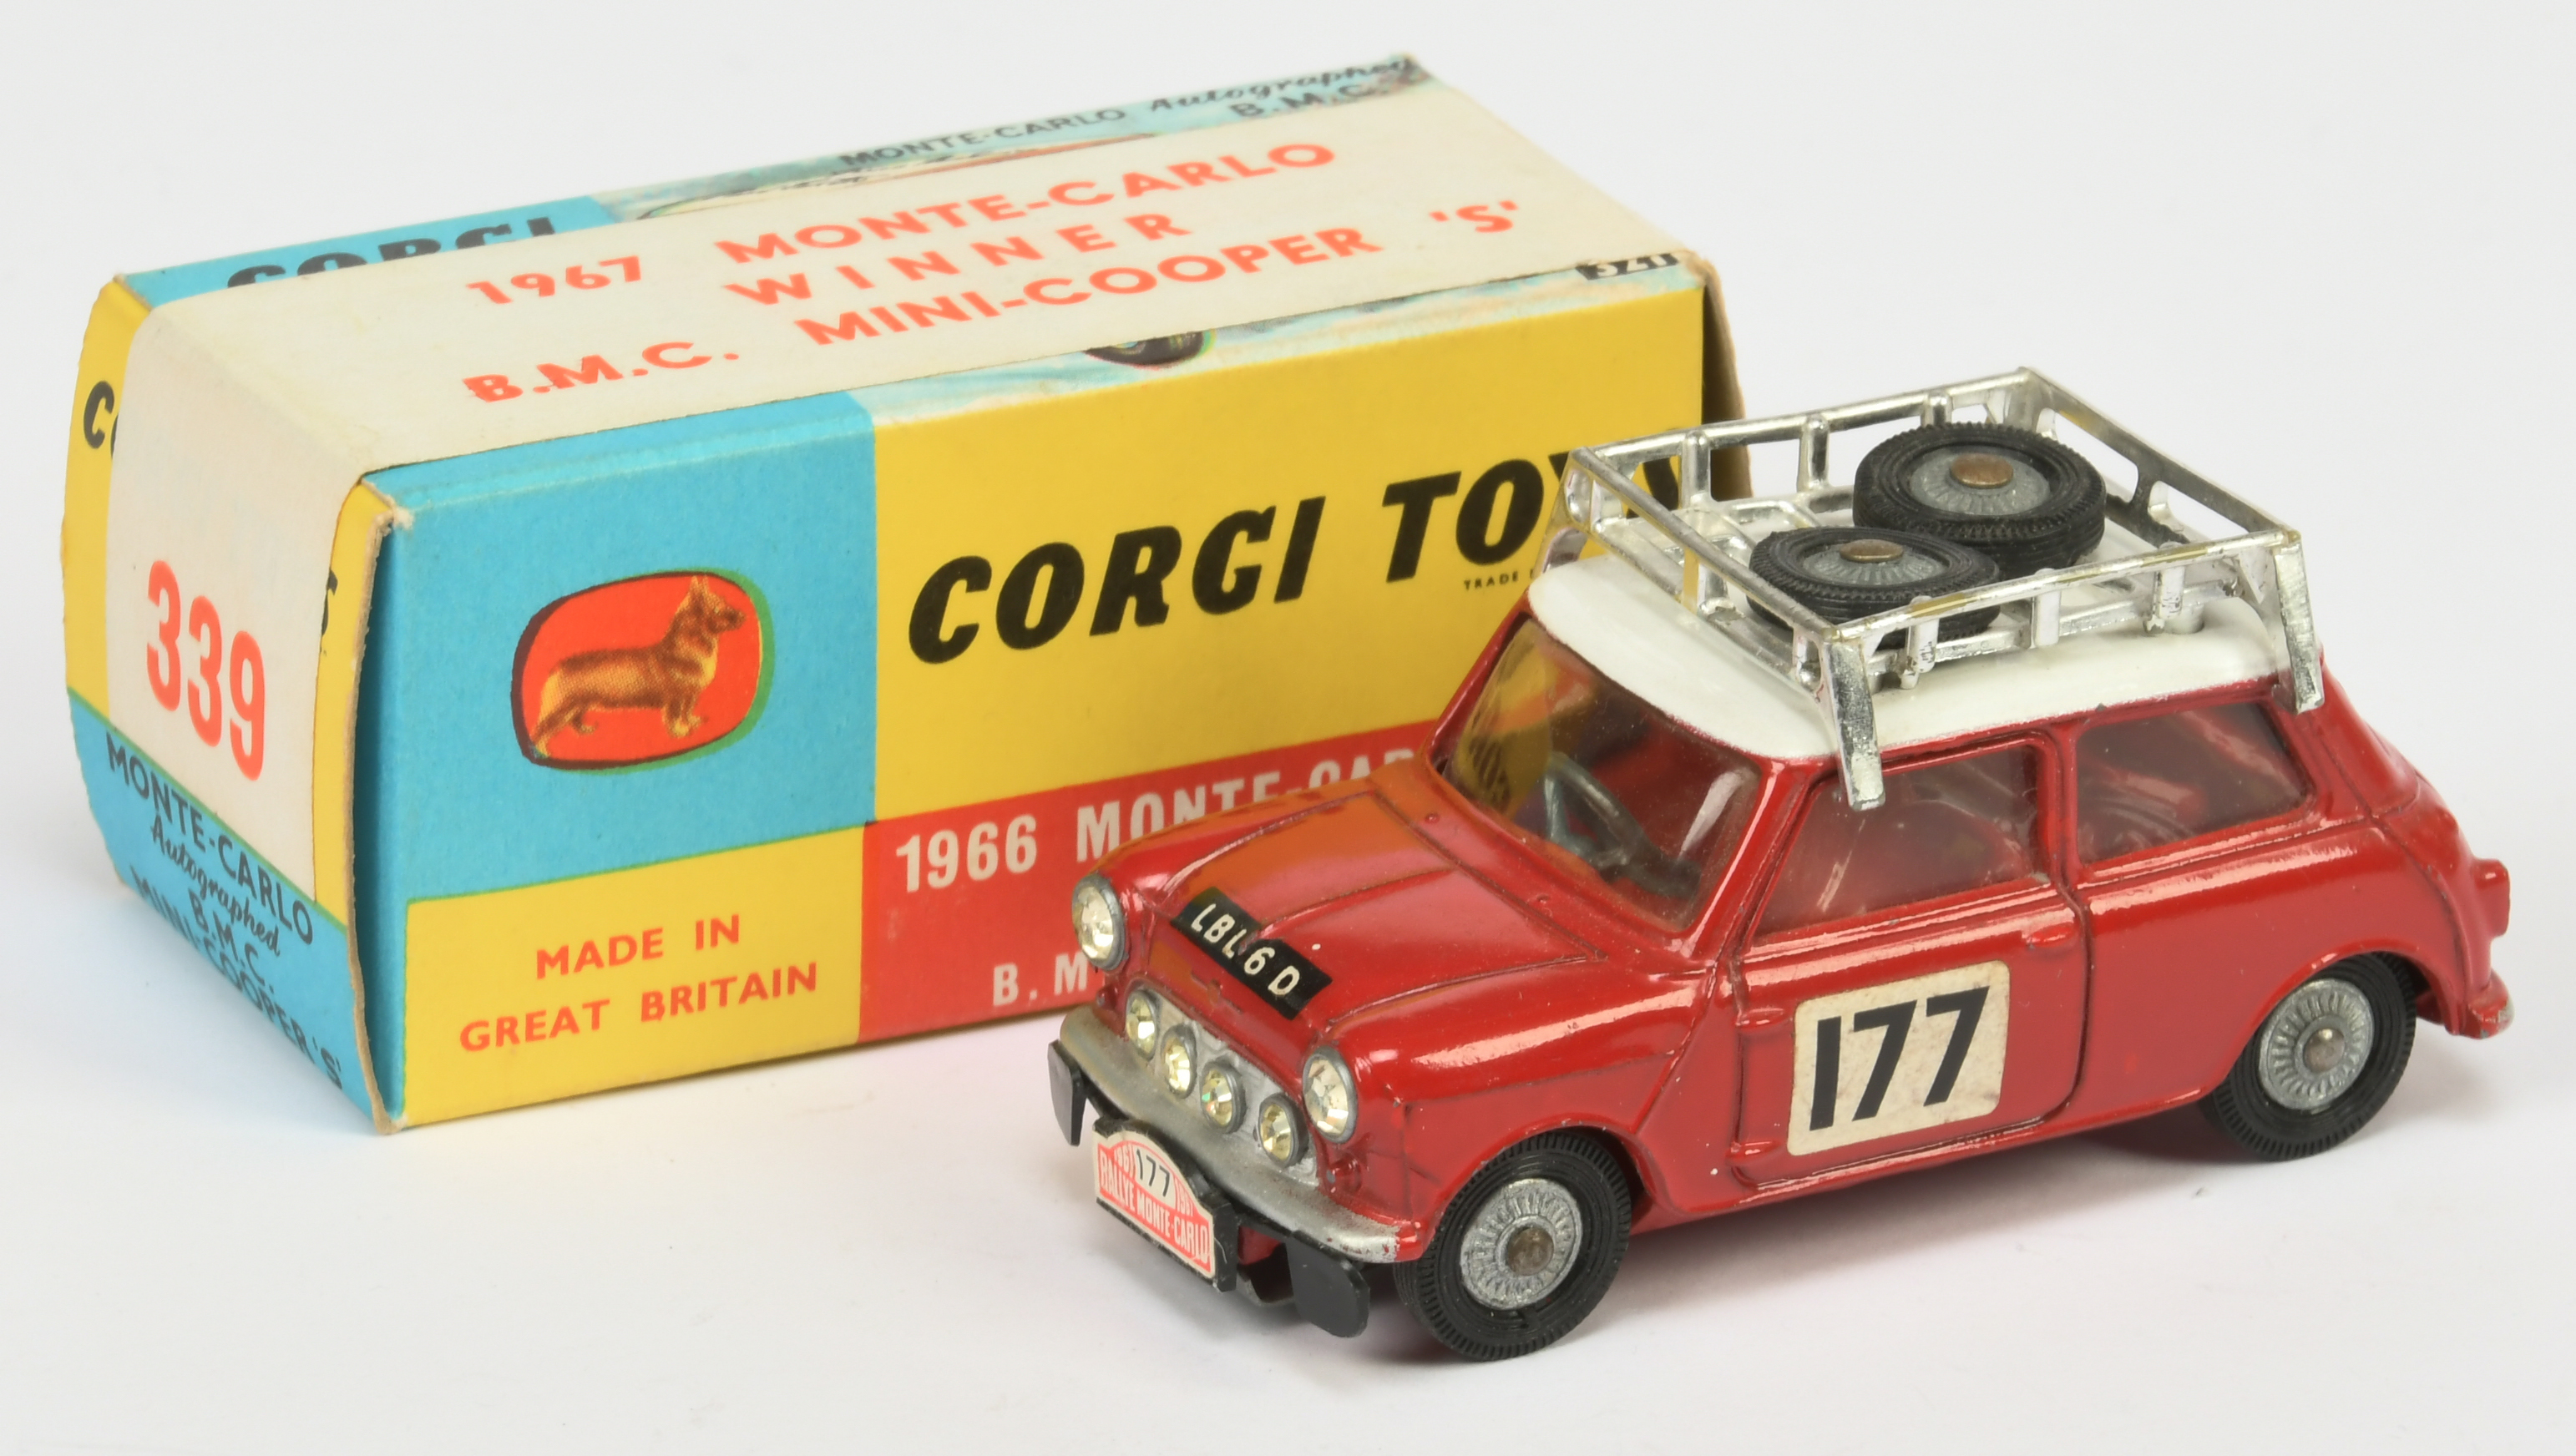 Corgi Toys 339 BMC Mini Cooper S "Rallye Monte Carlo" - Red body and interior, white roof with ch...